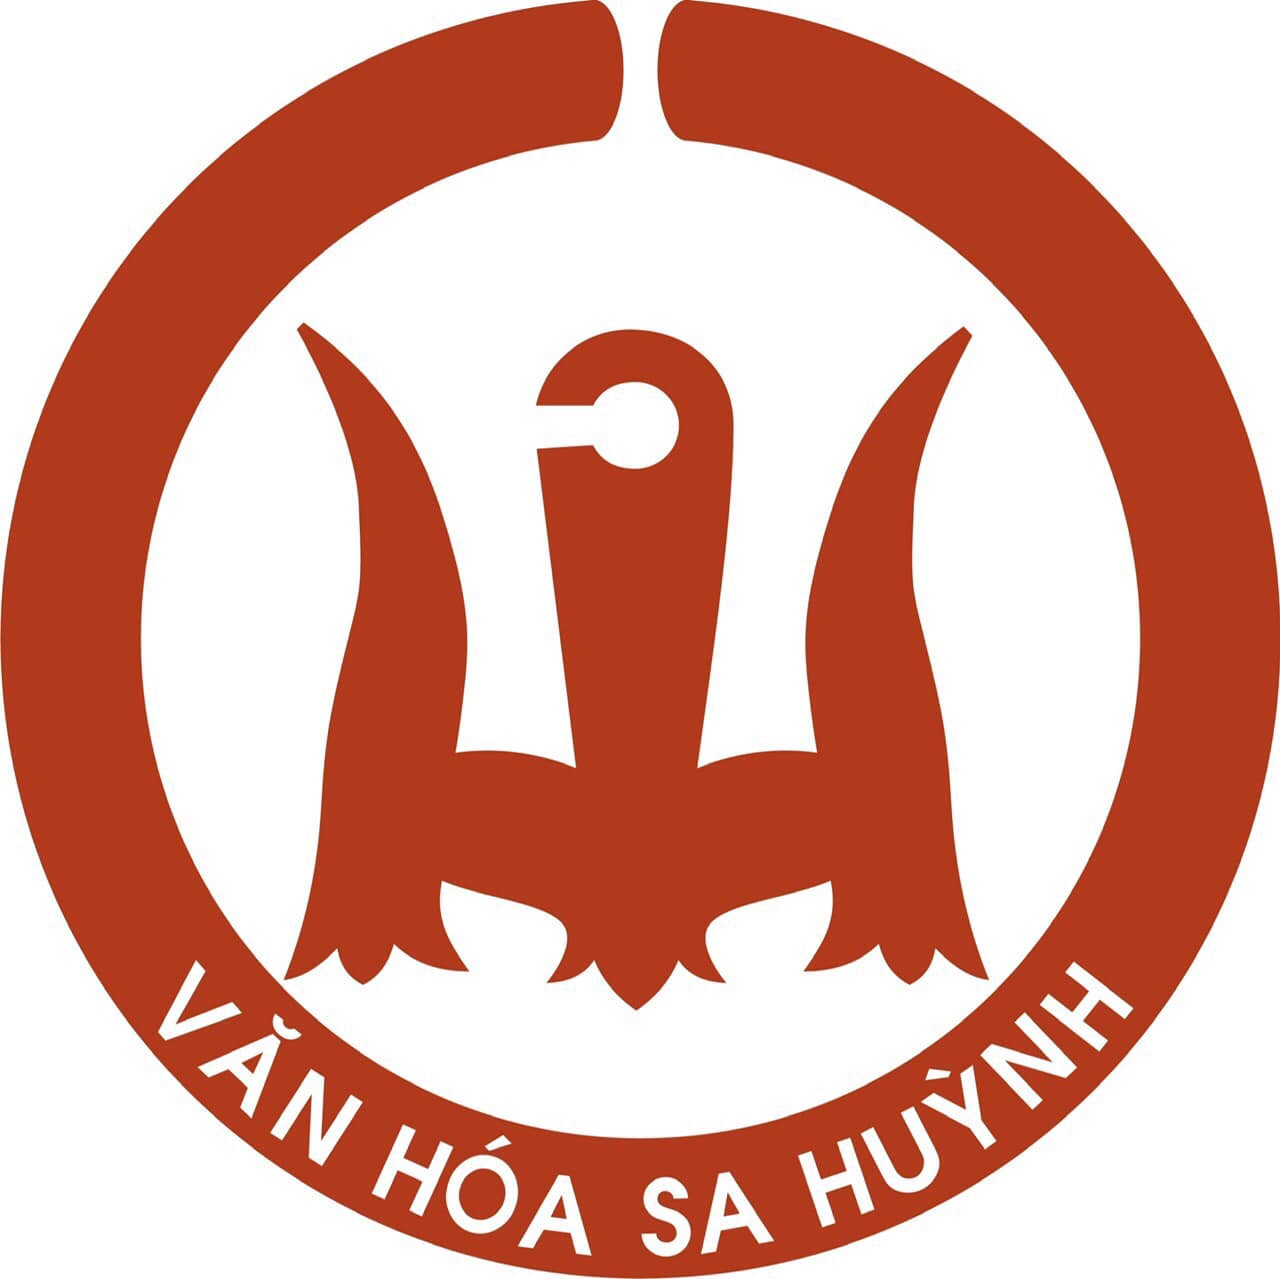 Sở Văn hóa, Thể thao và Du lịch Quảng Ngãi trao giải cuộc thi sáng tác Logo “Văn hóa Sa Huỳnh”